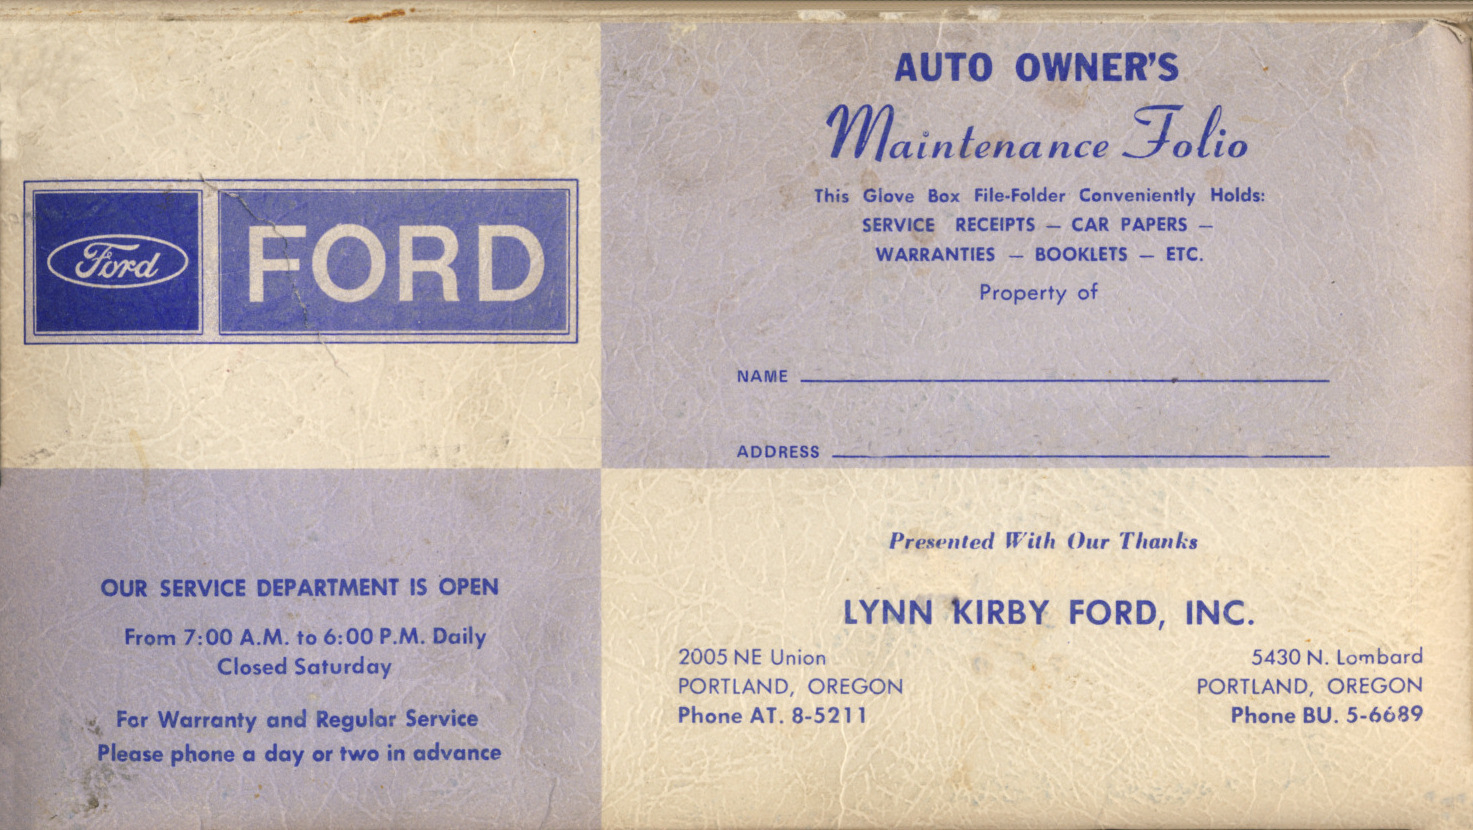 1968_Ford_Mtce_Folio-01